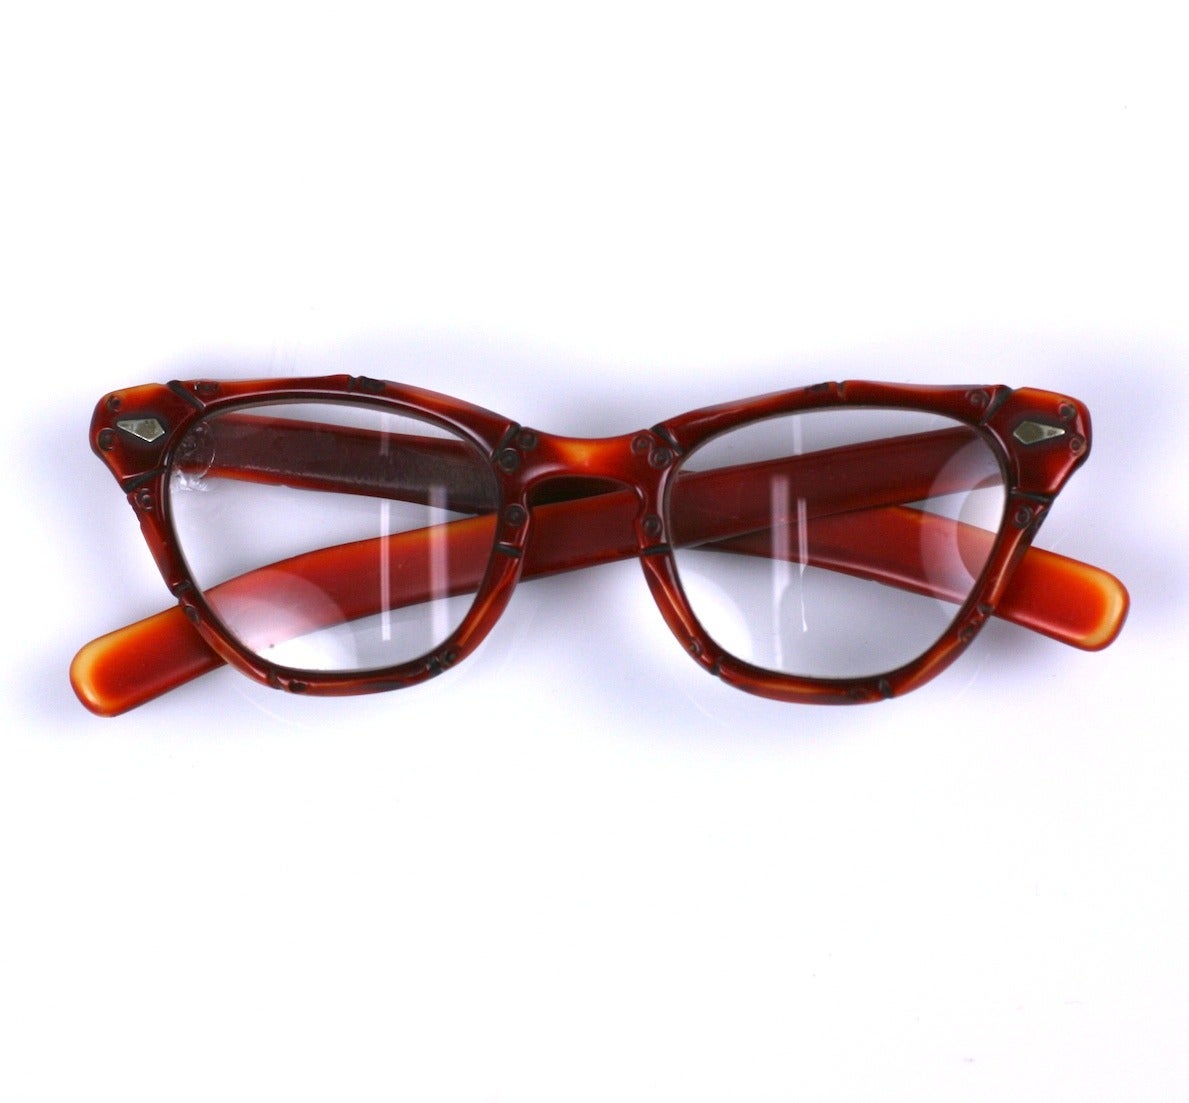 Art Deco handgeschnitzte Bakelit Brillenfassungen mit wunderschöner Patina. Das cremefarbene Bakelit mit rötlich-oranger Patinierung sieht aus wie Bambus mit geschnitzter Segmentierung.
Diese bezaubernde Brille hat derzeit Korrekturgläser (eines